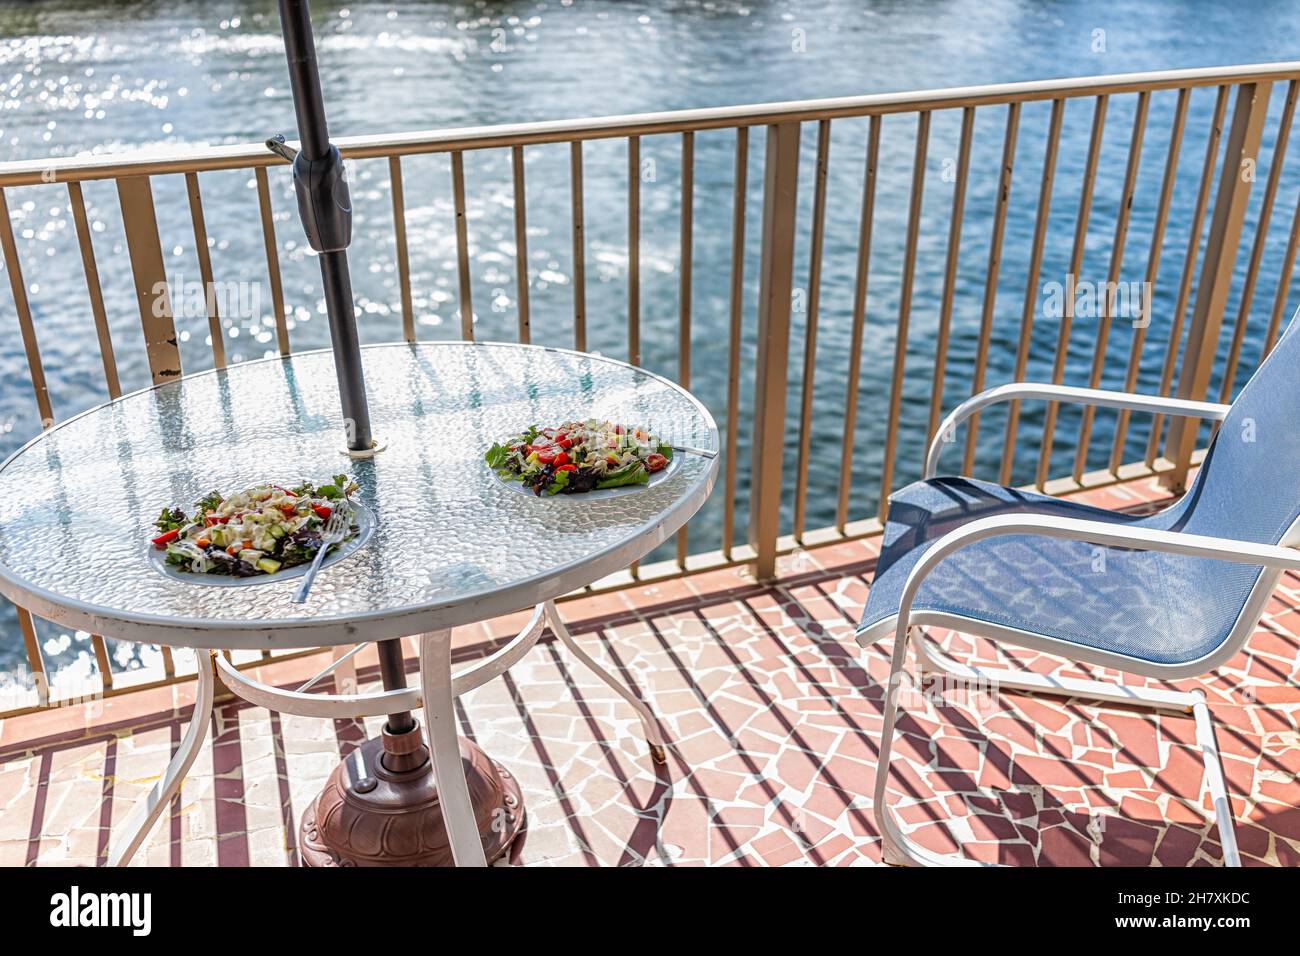 Deux assiettes à salade sur une table en verre et une balustrade sur le balcon, parasol à l'extérieur de personne à Miami, Florida intracoastal Waterway avec chaises et romantique v Banque D'Images